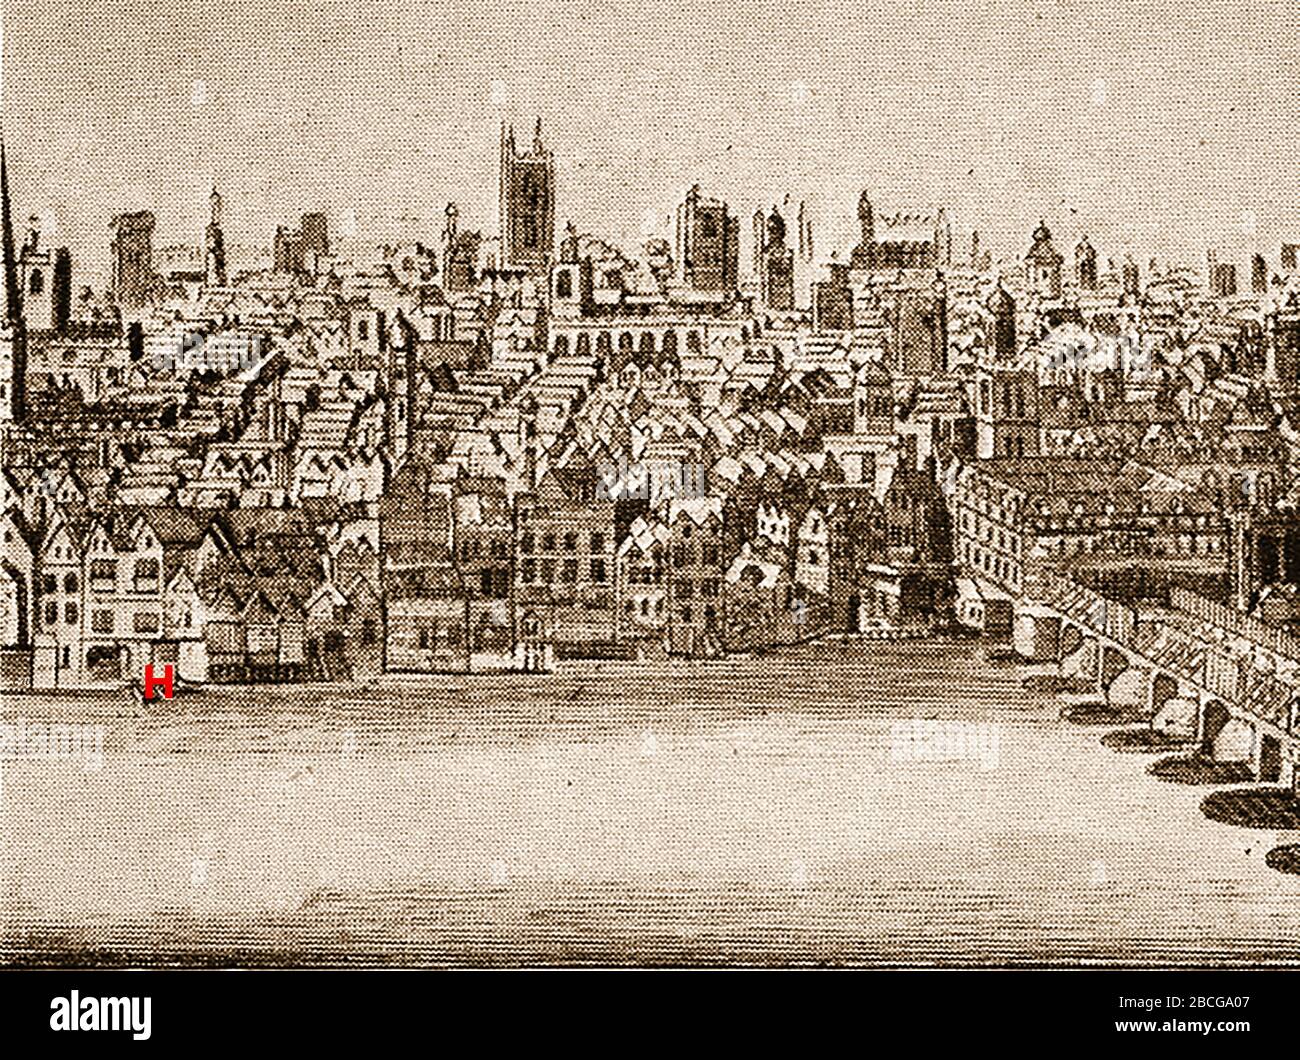 Jahrhundert London vor dem großen Brand, der das als Steelyard bekannte britische Hansa League Headquarters Dock zeigt (an der Seite der Themse mit rotem H markiert). Stockfoto